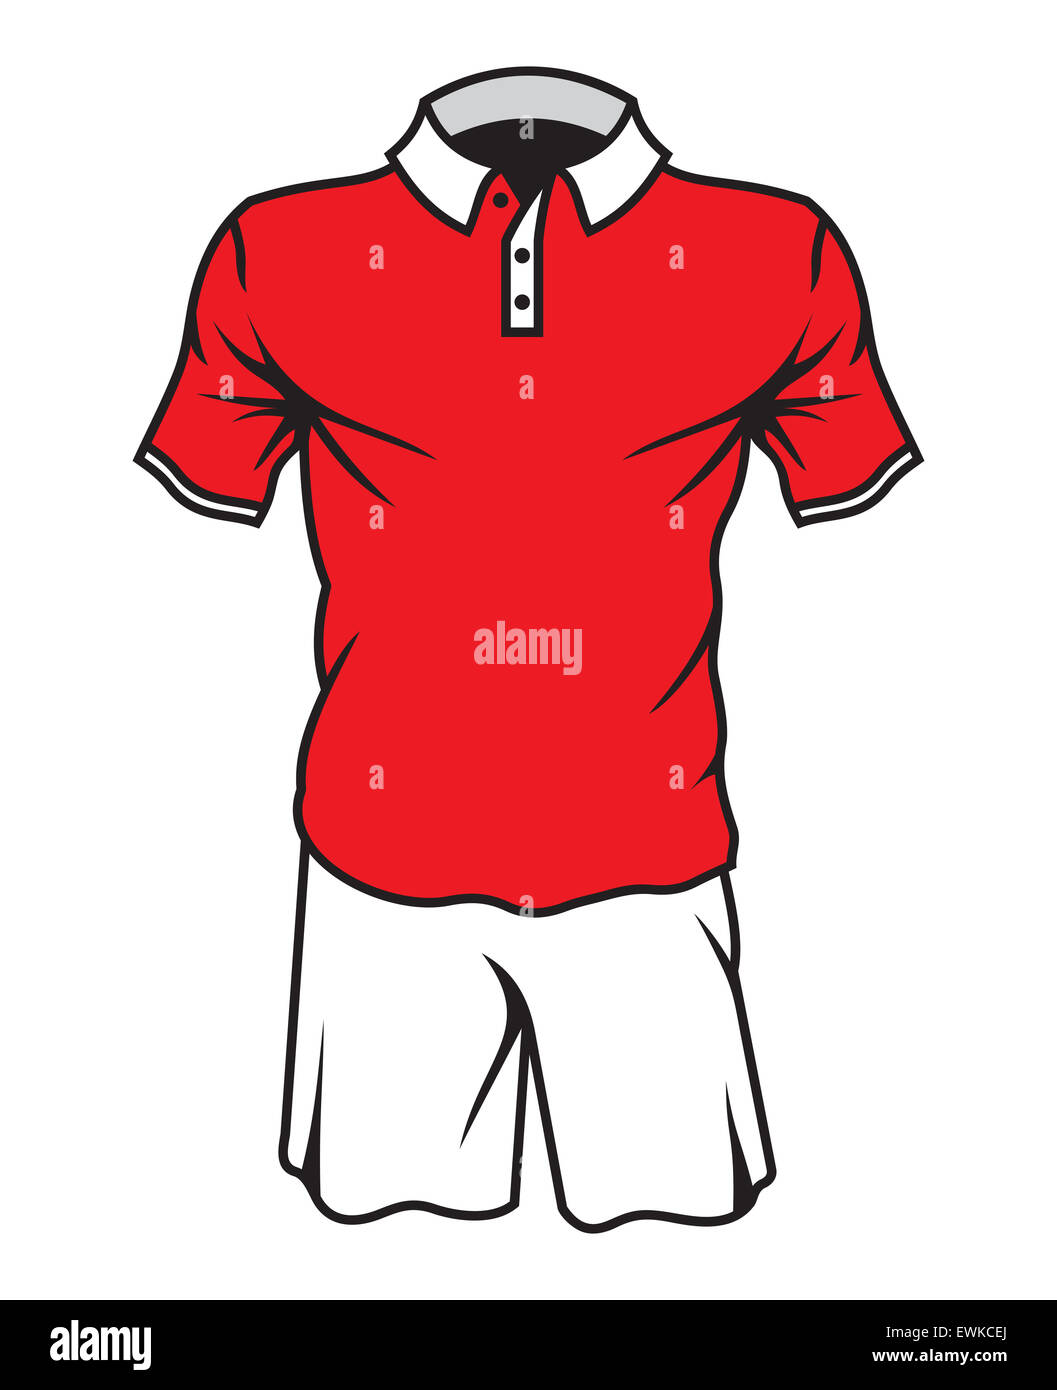 Viper Football Referee Kit Set Shirt Shorts Socks Uniform Sports kit New Design 